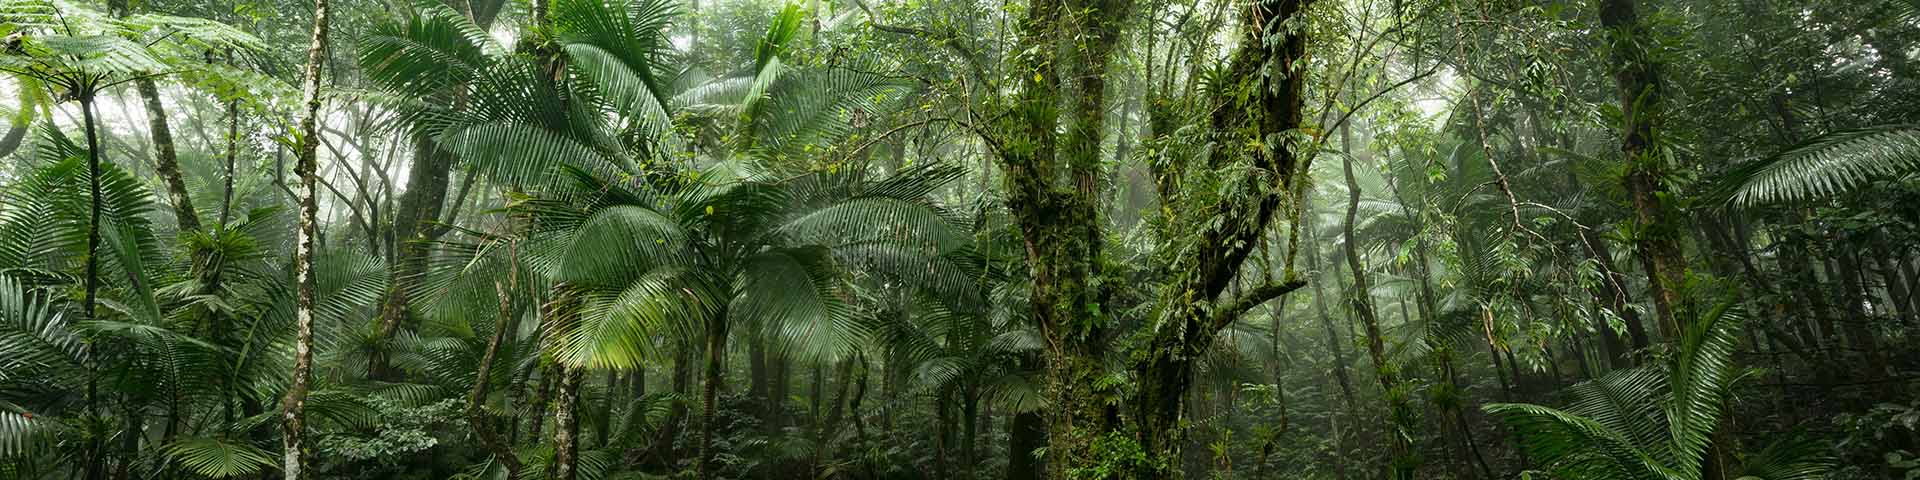 Grüne Dschungelszene aus dem Regenwald El Yunque auf der karibischen Insel Puerto Rico.